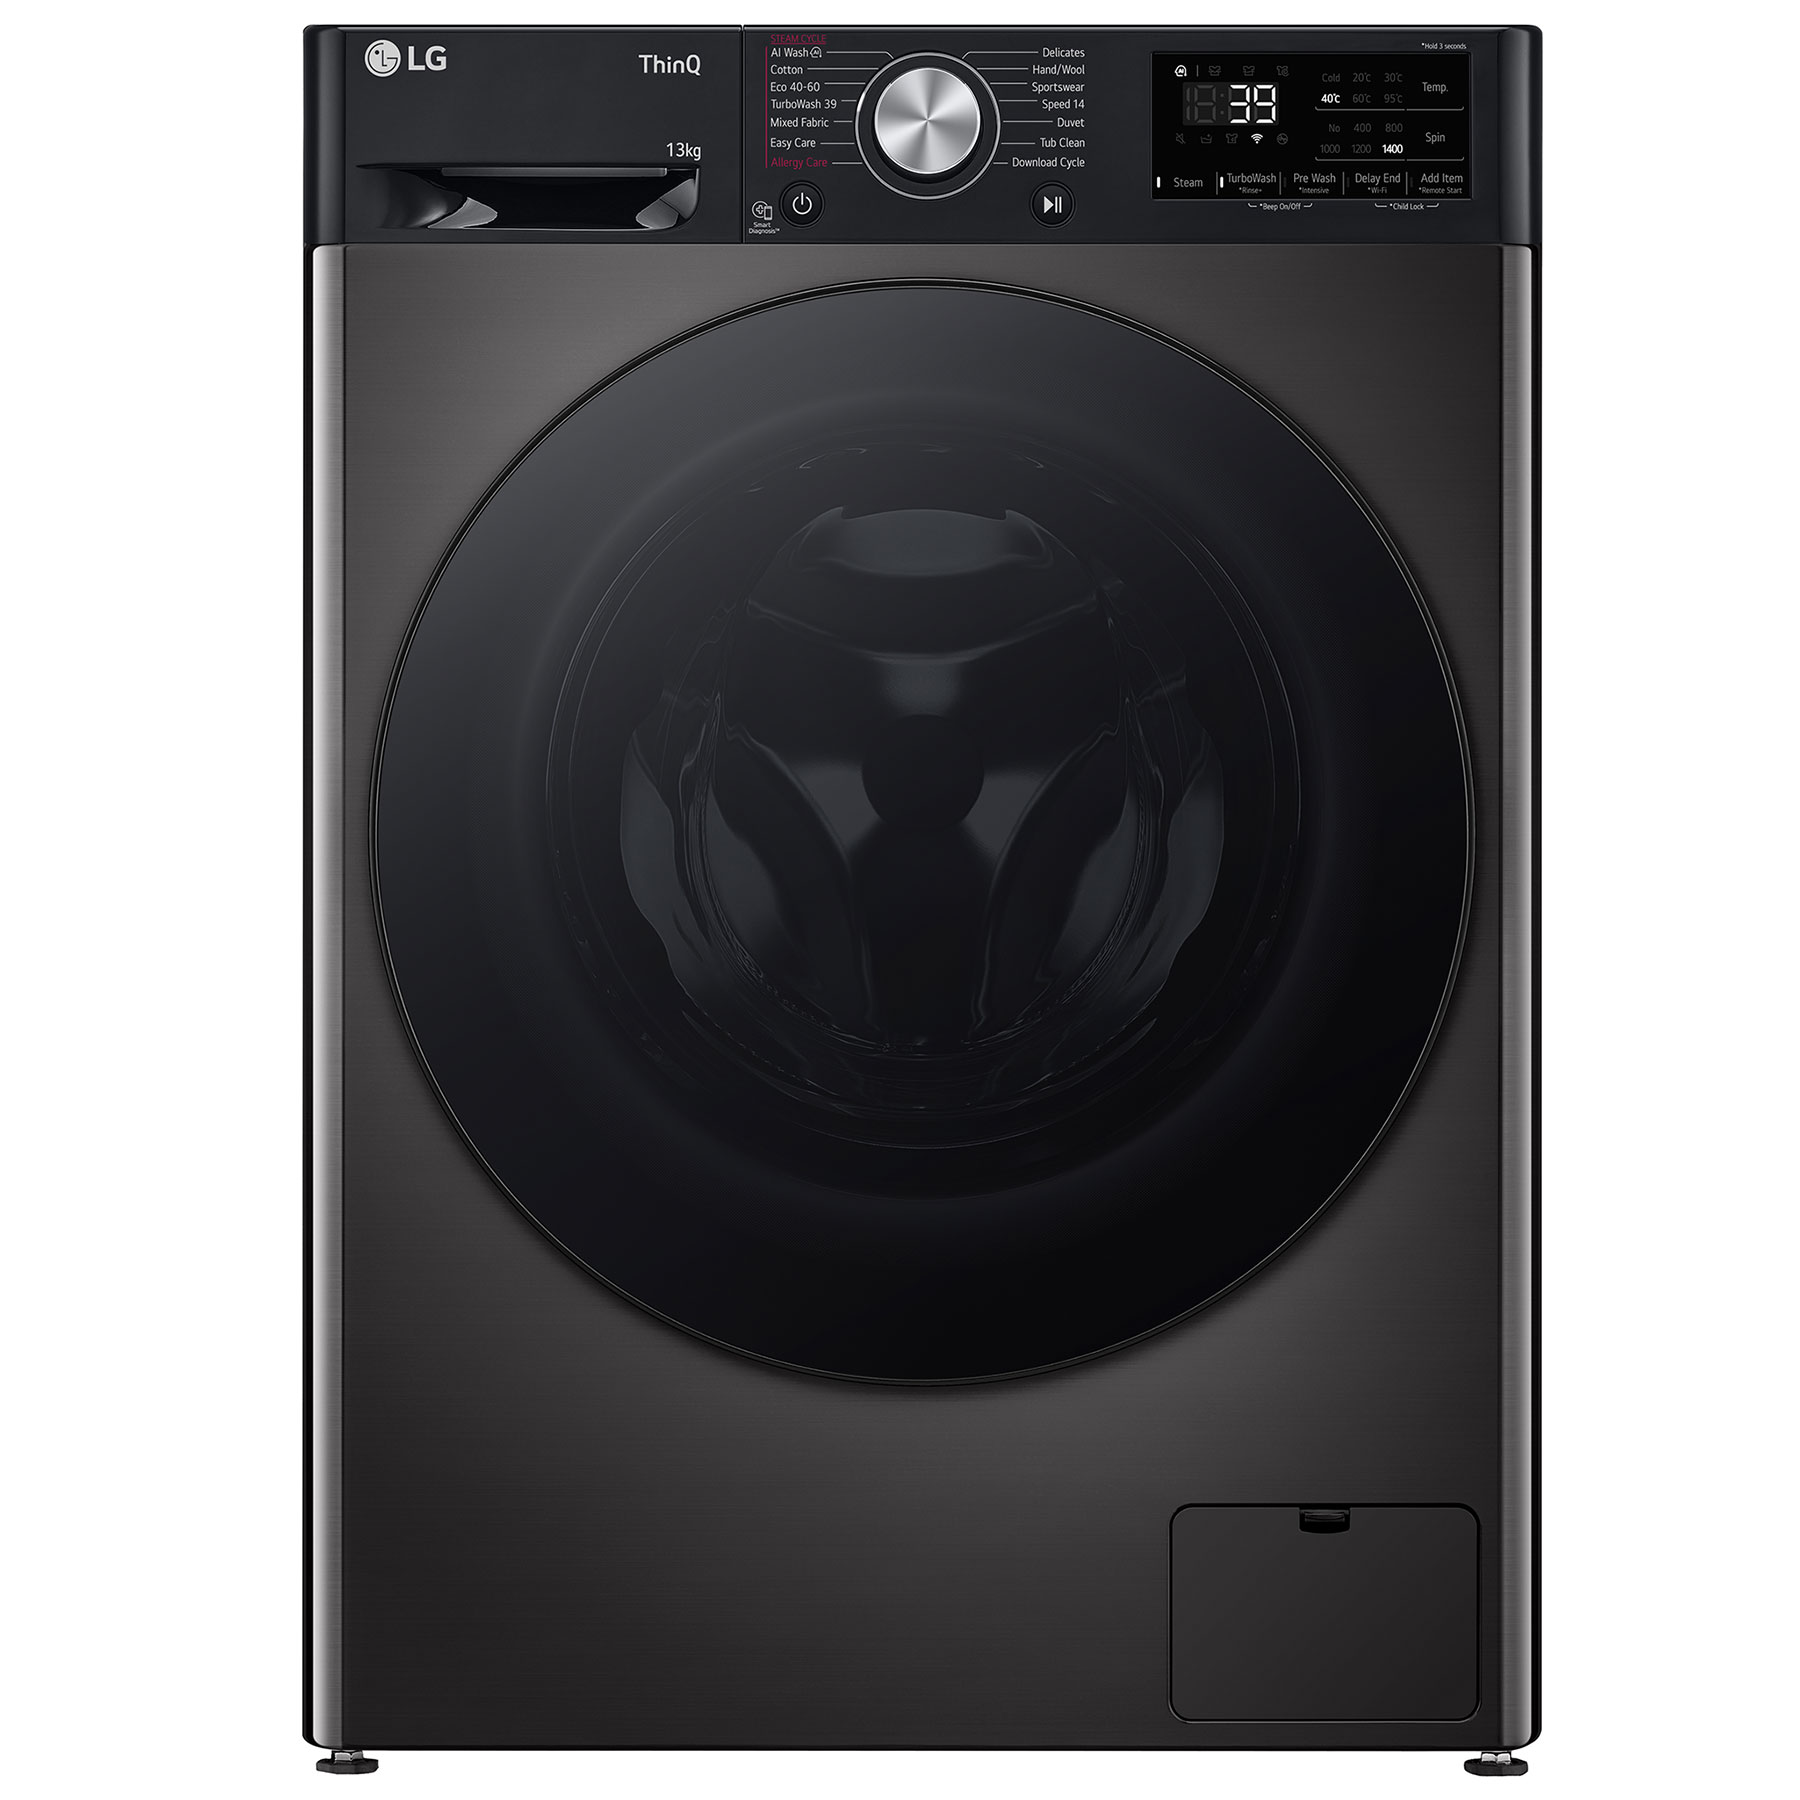 LG F4Y713BBTN1 Washing Machine in Black 1400rpm 13kg A Rated Wi Fi